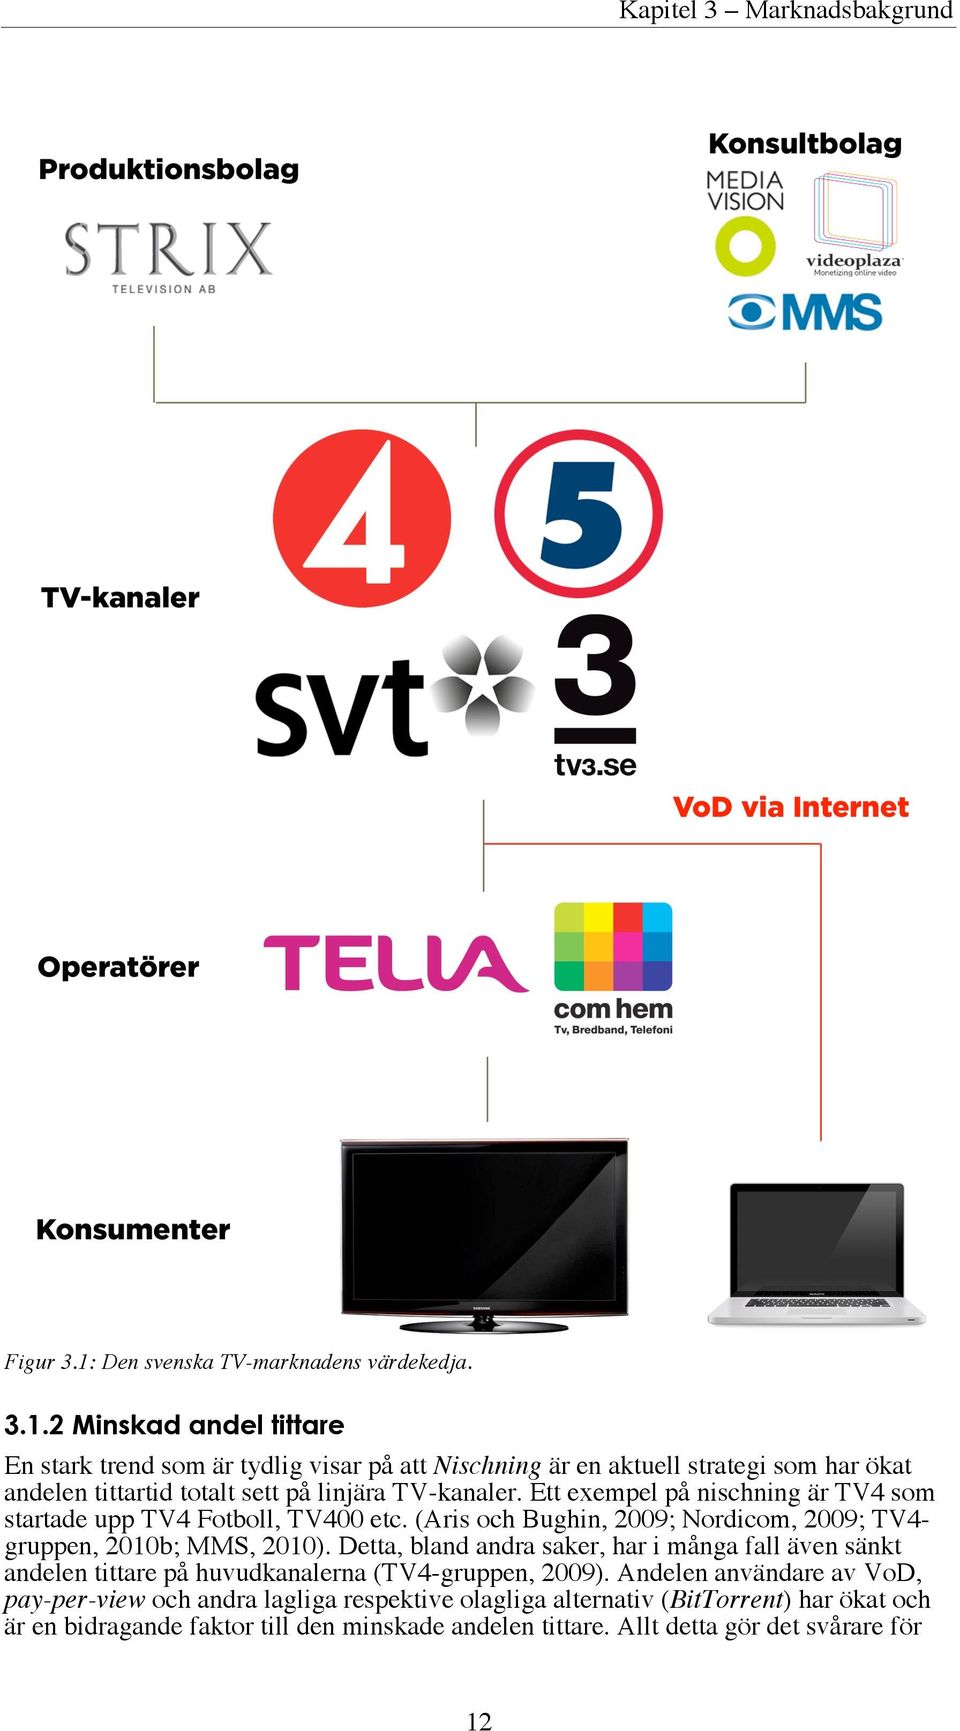 Institutet för Reklam- och Mediestatistik (IRM) i Sverige analyserar mediemarknaden ur många aspekter och däribland hur mycket pengar som investeras i mediemarknaden.